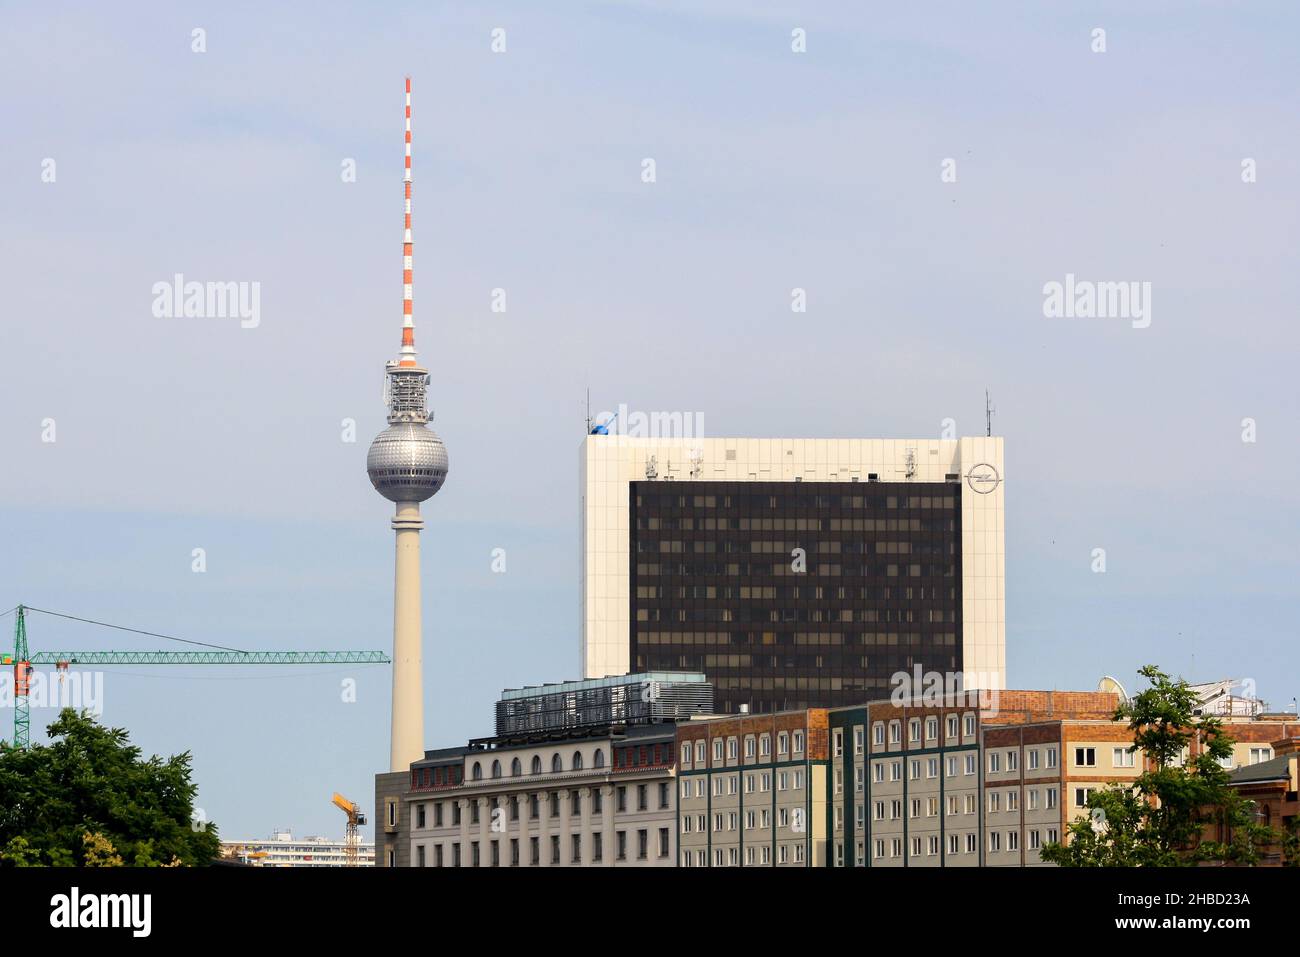 Paesaggio urbano di Berlino in estate con vista sulla famosa torre della televisione di Berlino e l'International Trade Center. Sfondo cielo blu chiaro. Nessuna gente. Foto Stock